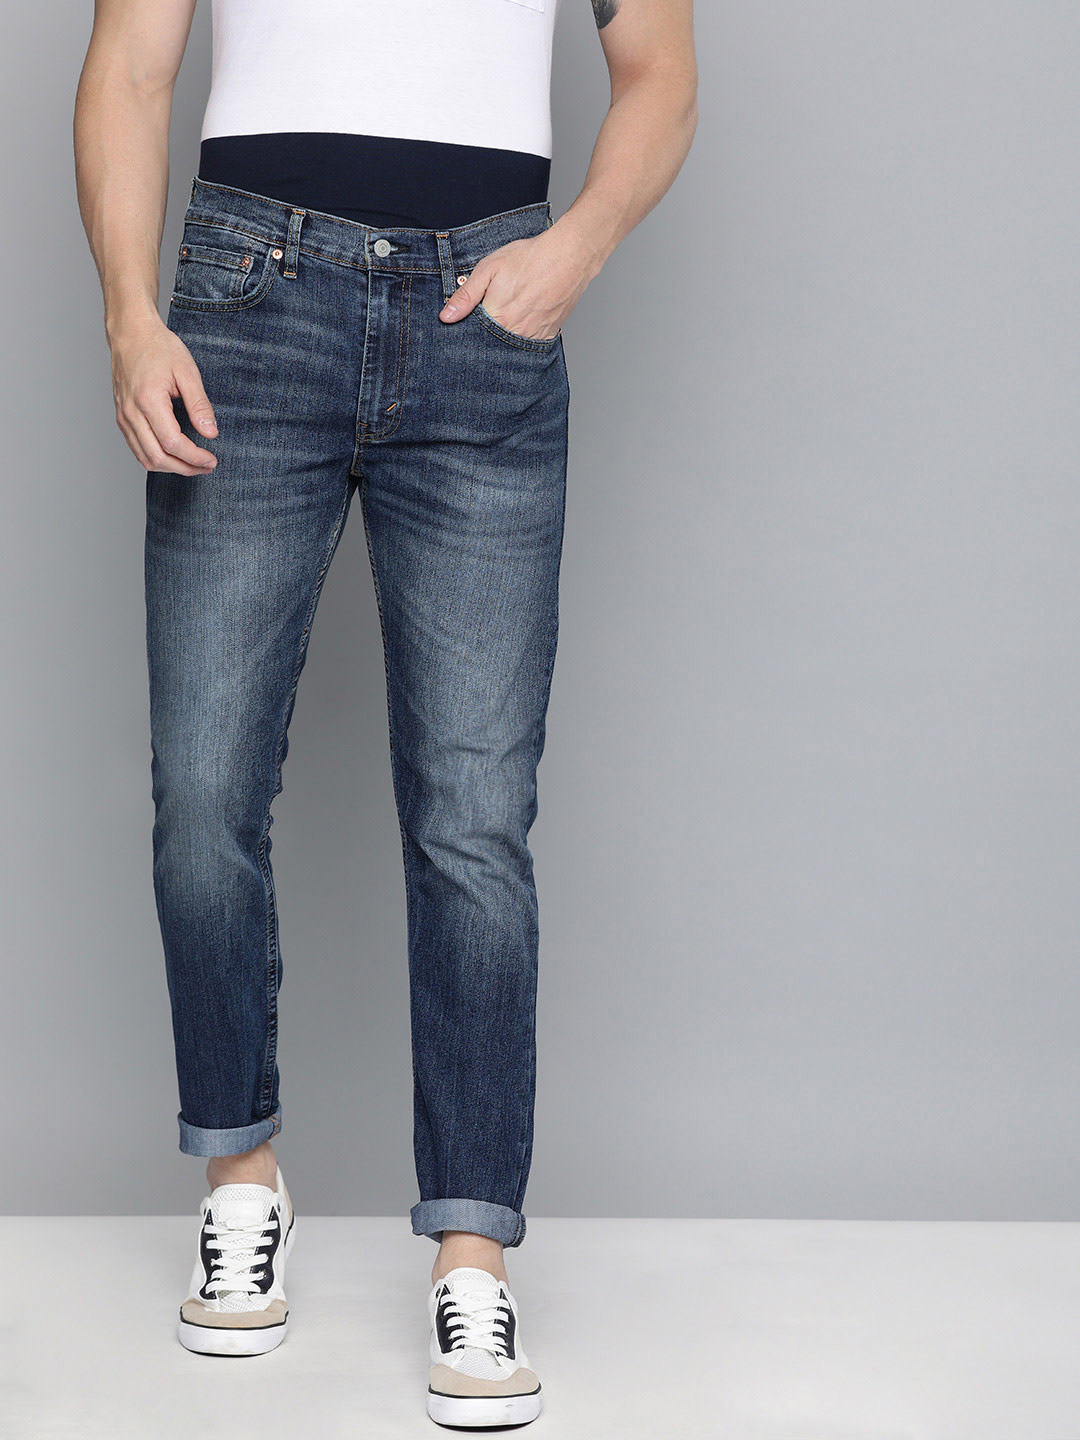 levis navy blue jeans